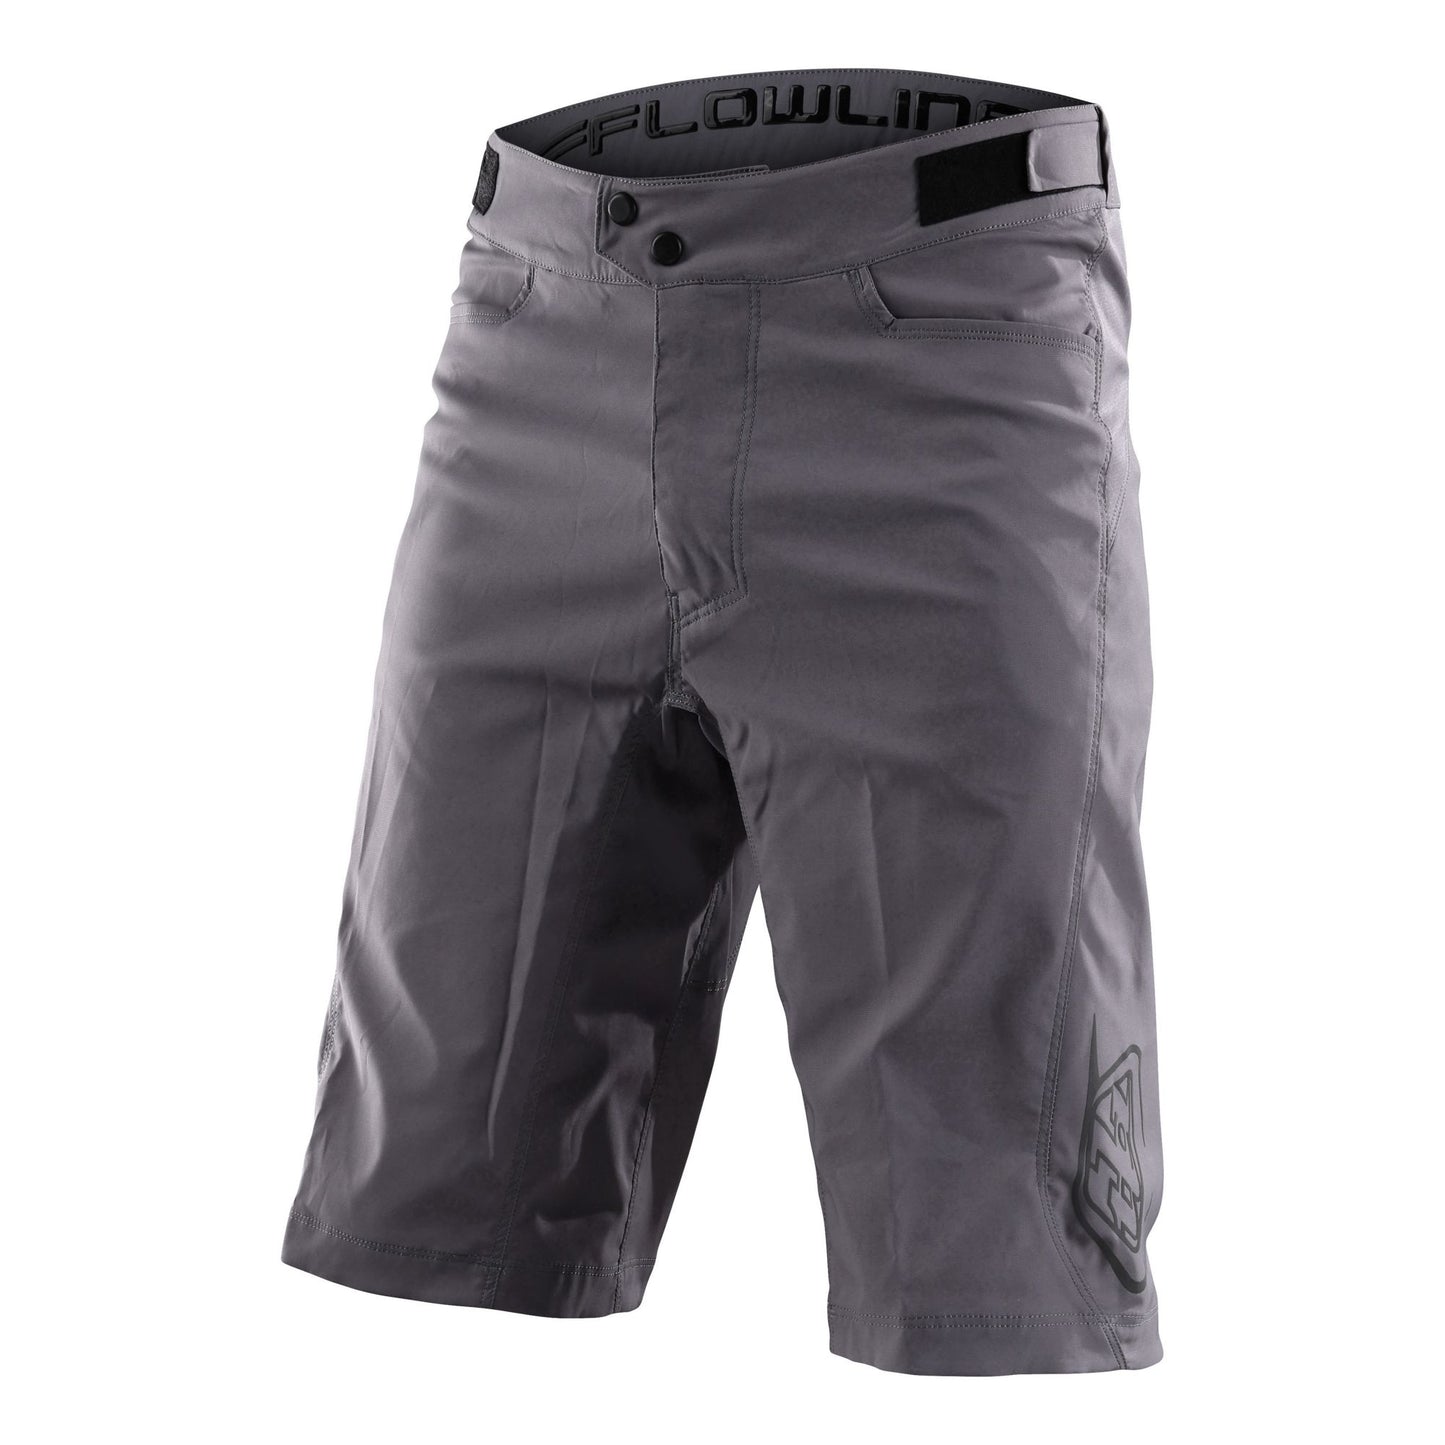 Troy Lee Designs Flowline Short w/ Liner Solid Charcoal Bike Shorts